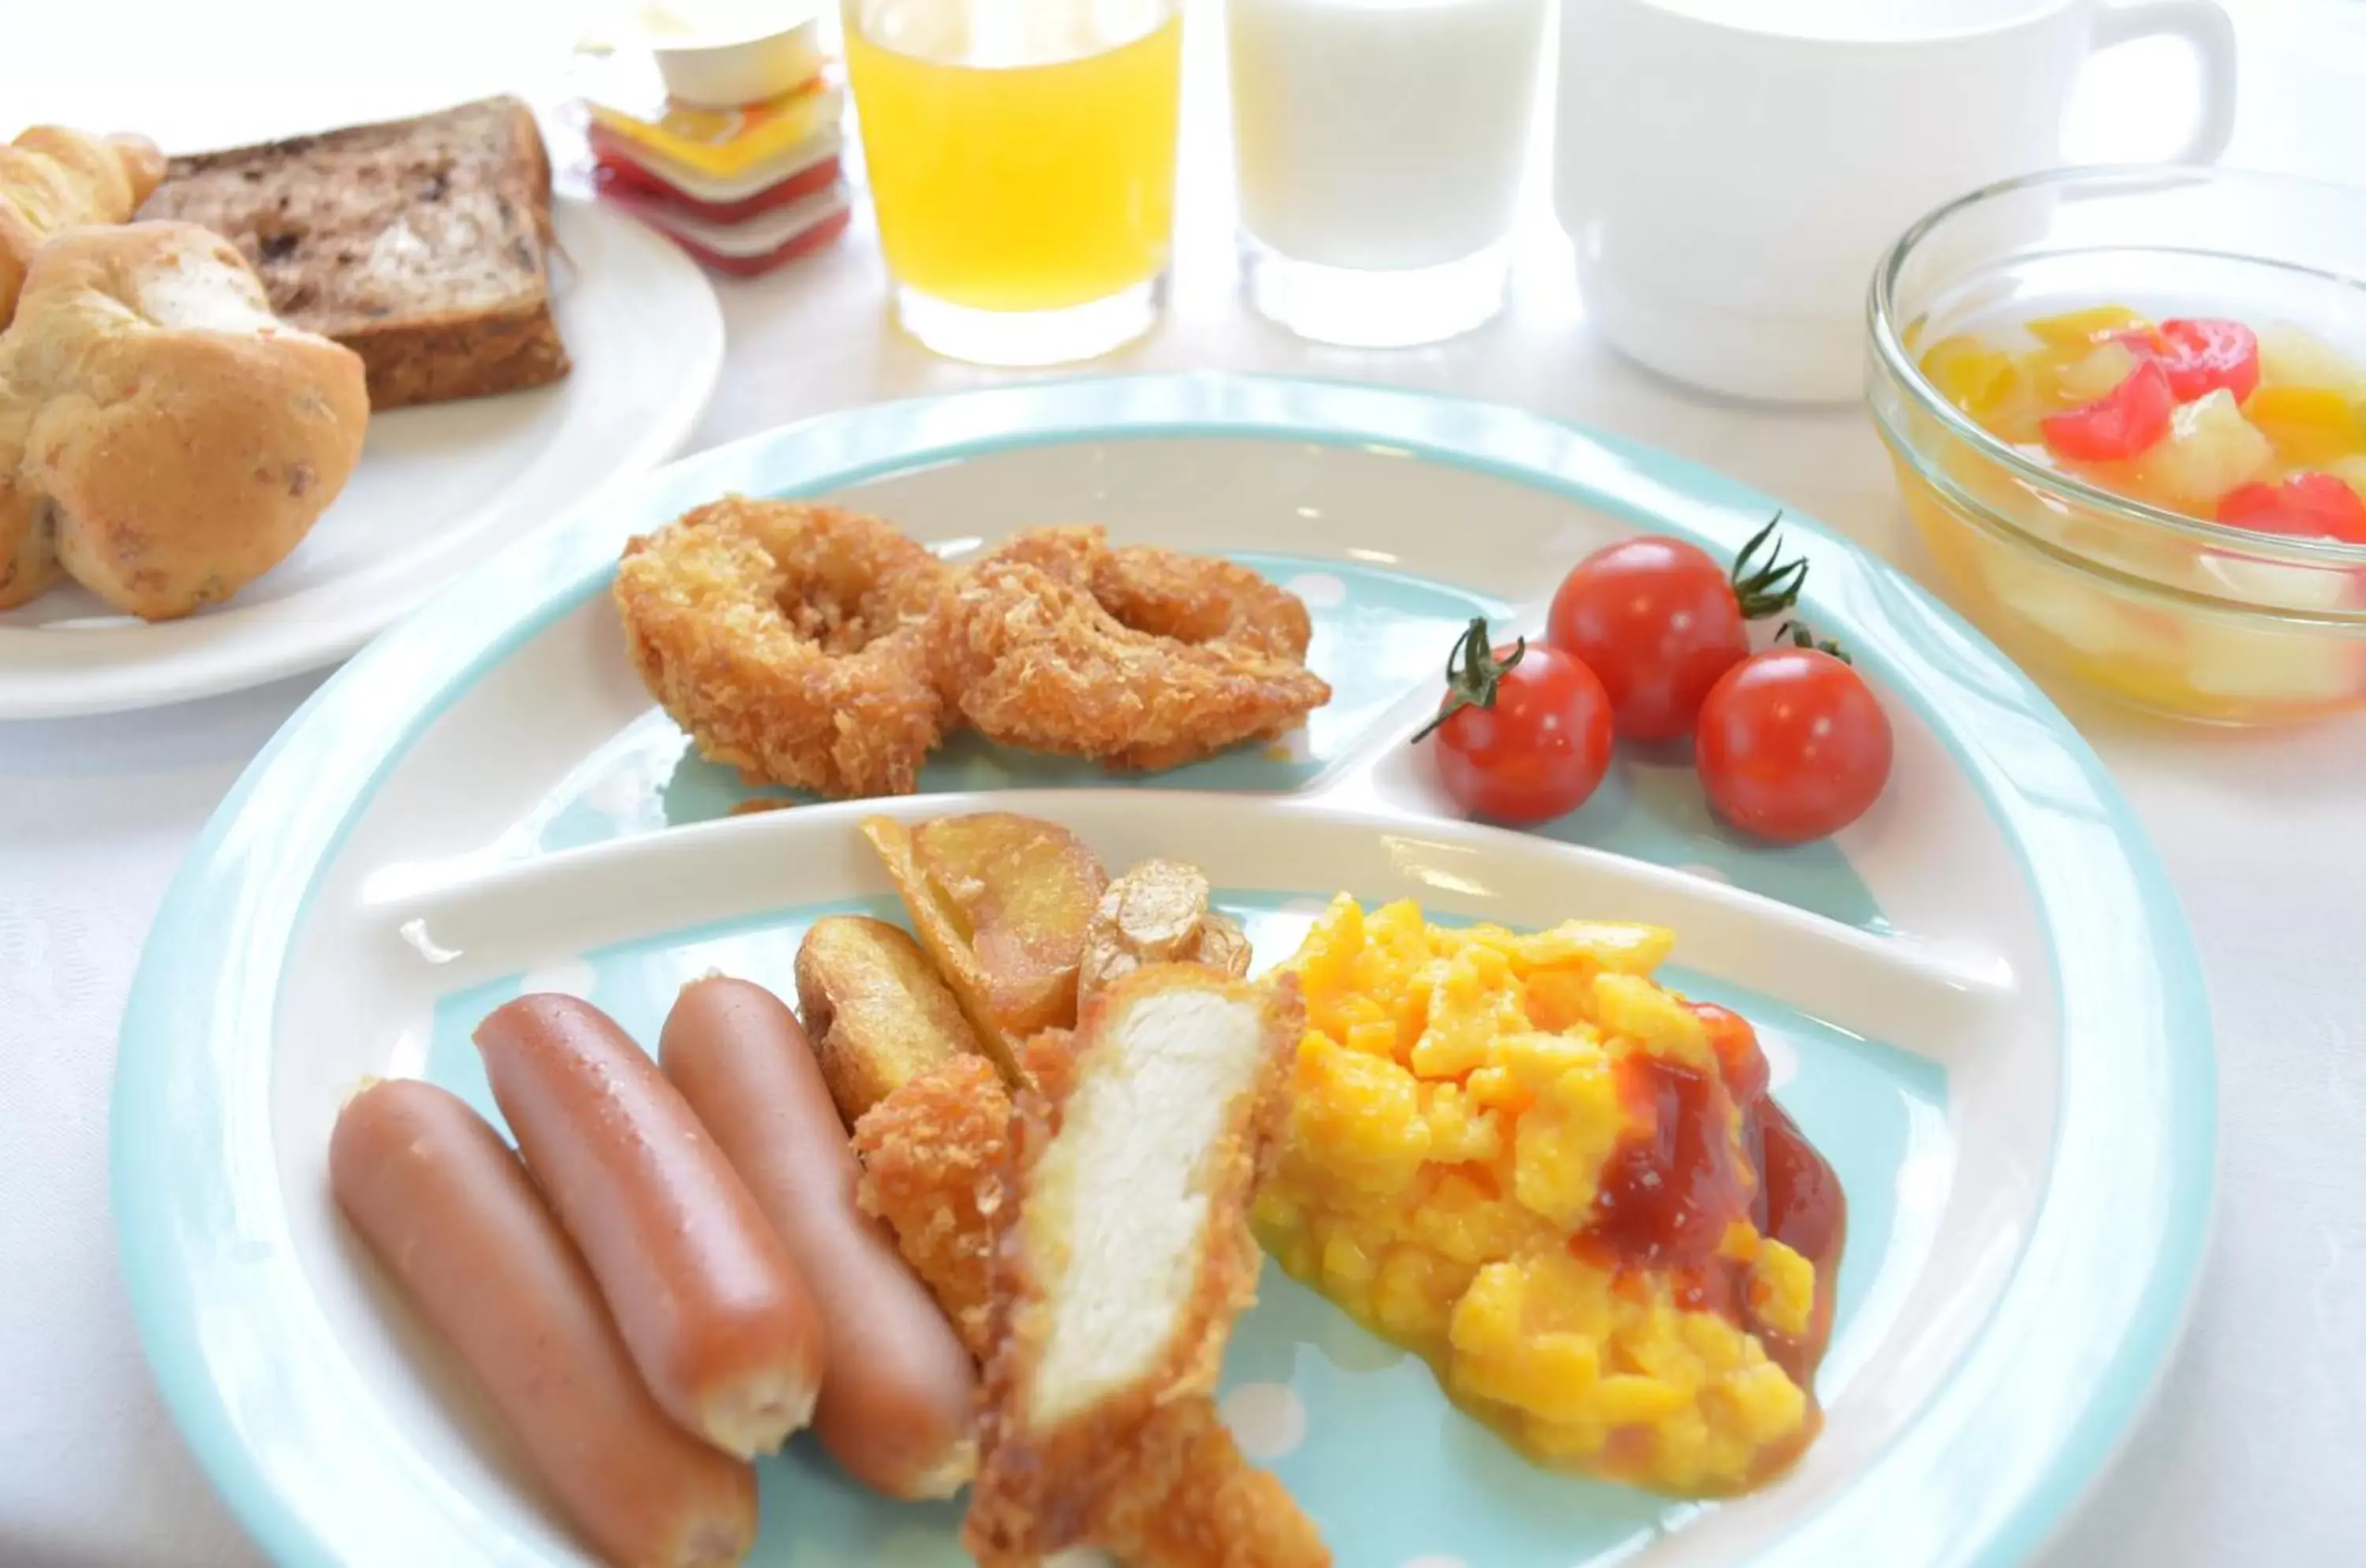 Buffet breakfast in Hotel Sunroute Sapporo